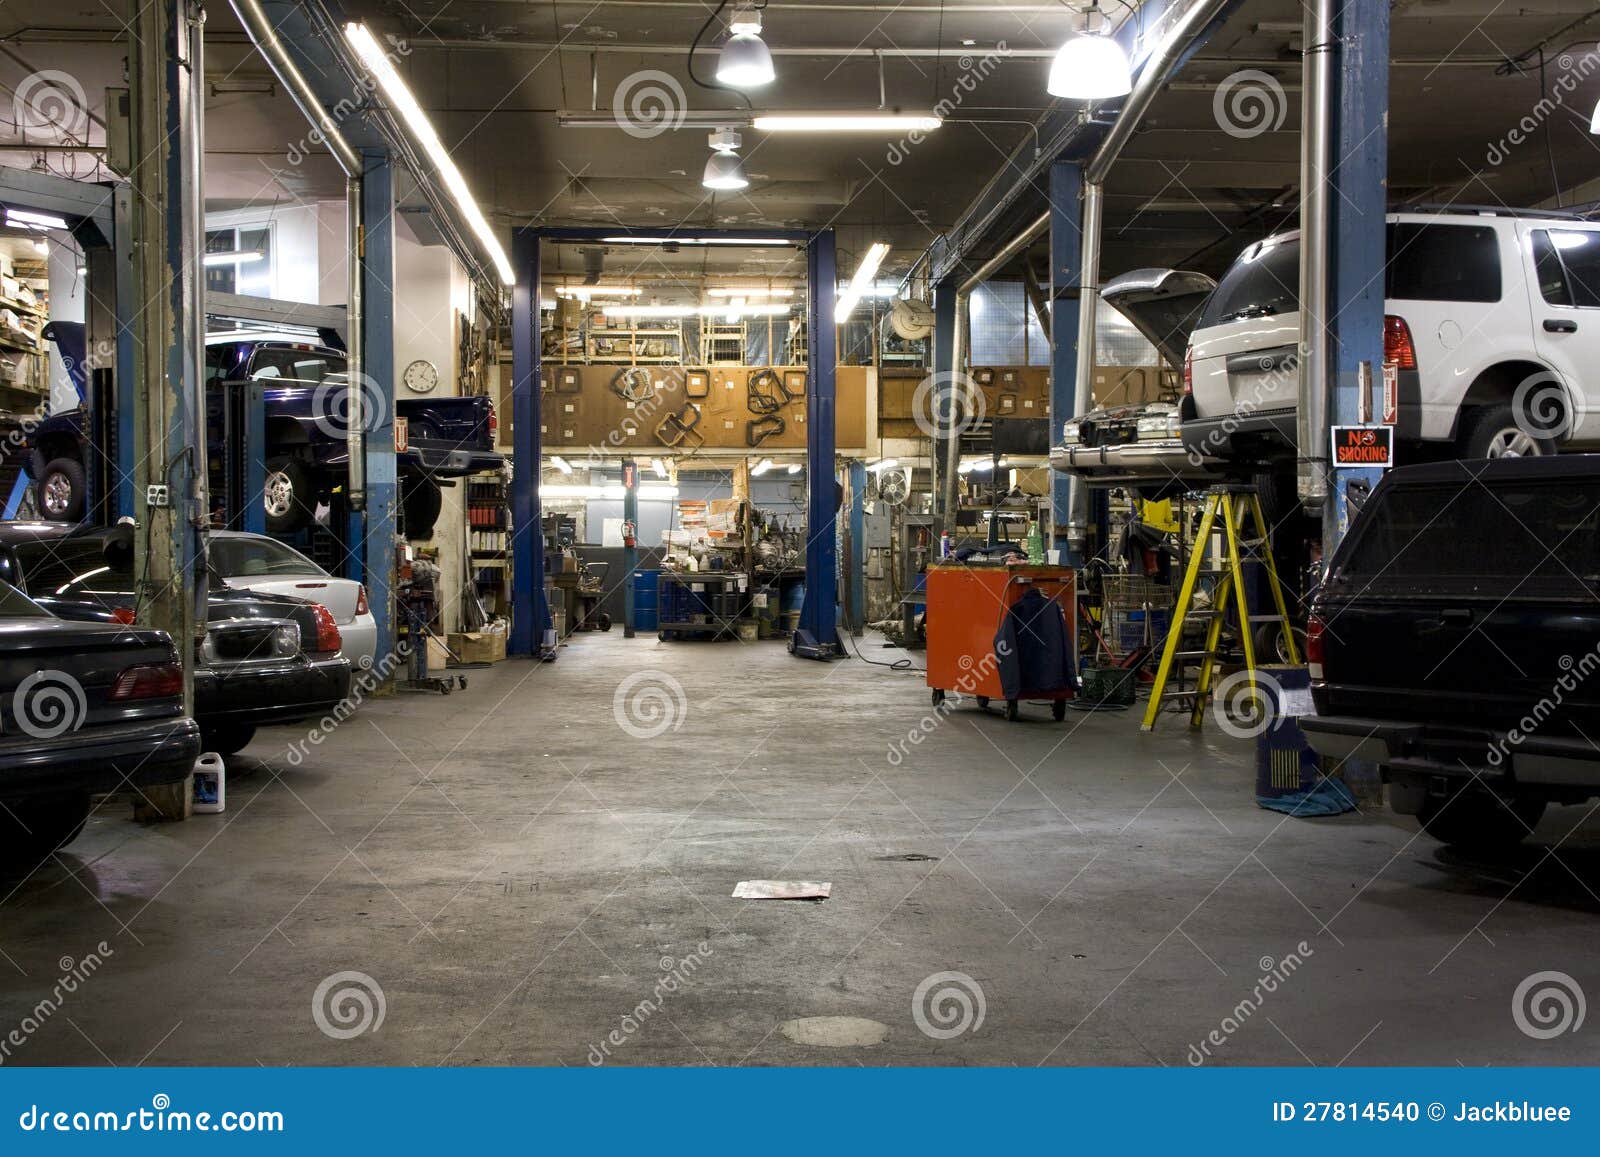 car fixing garage